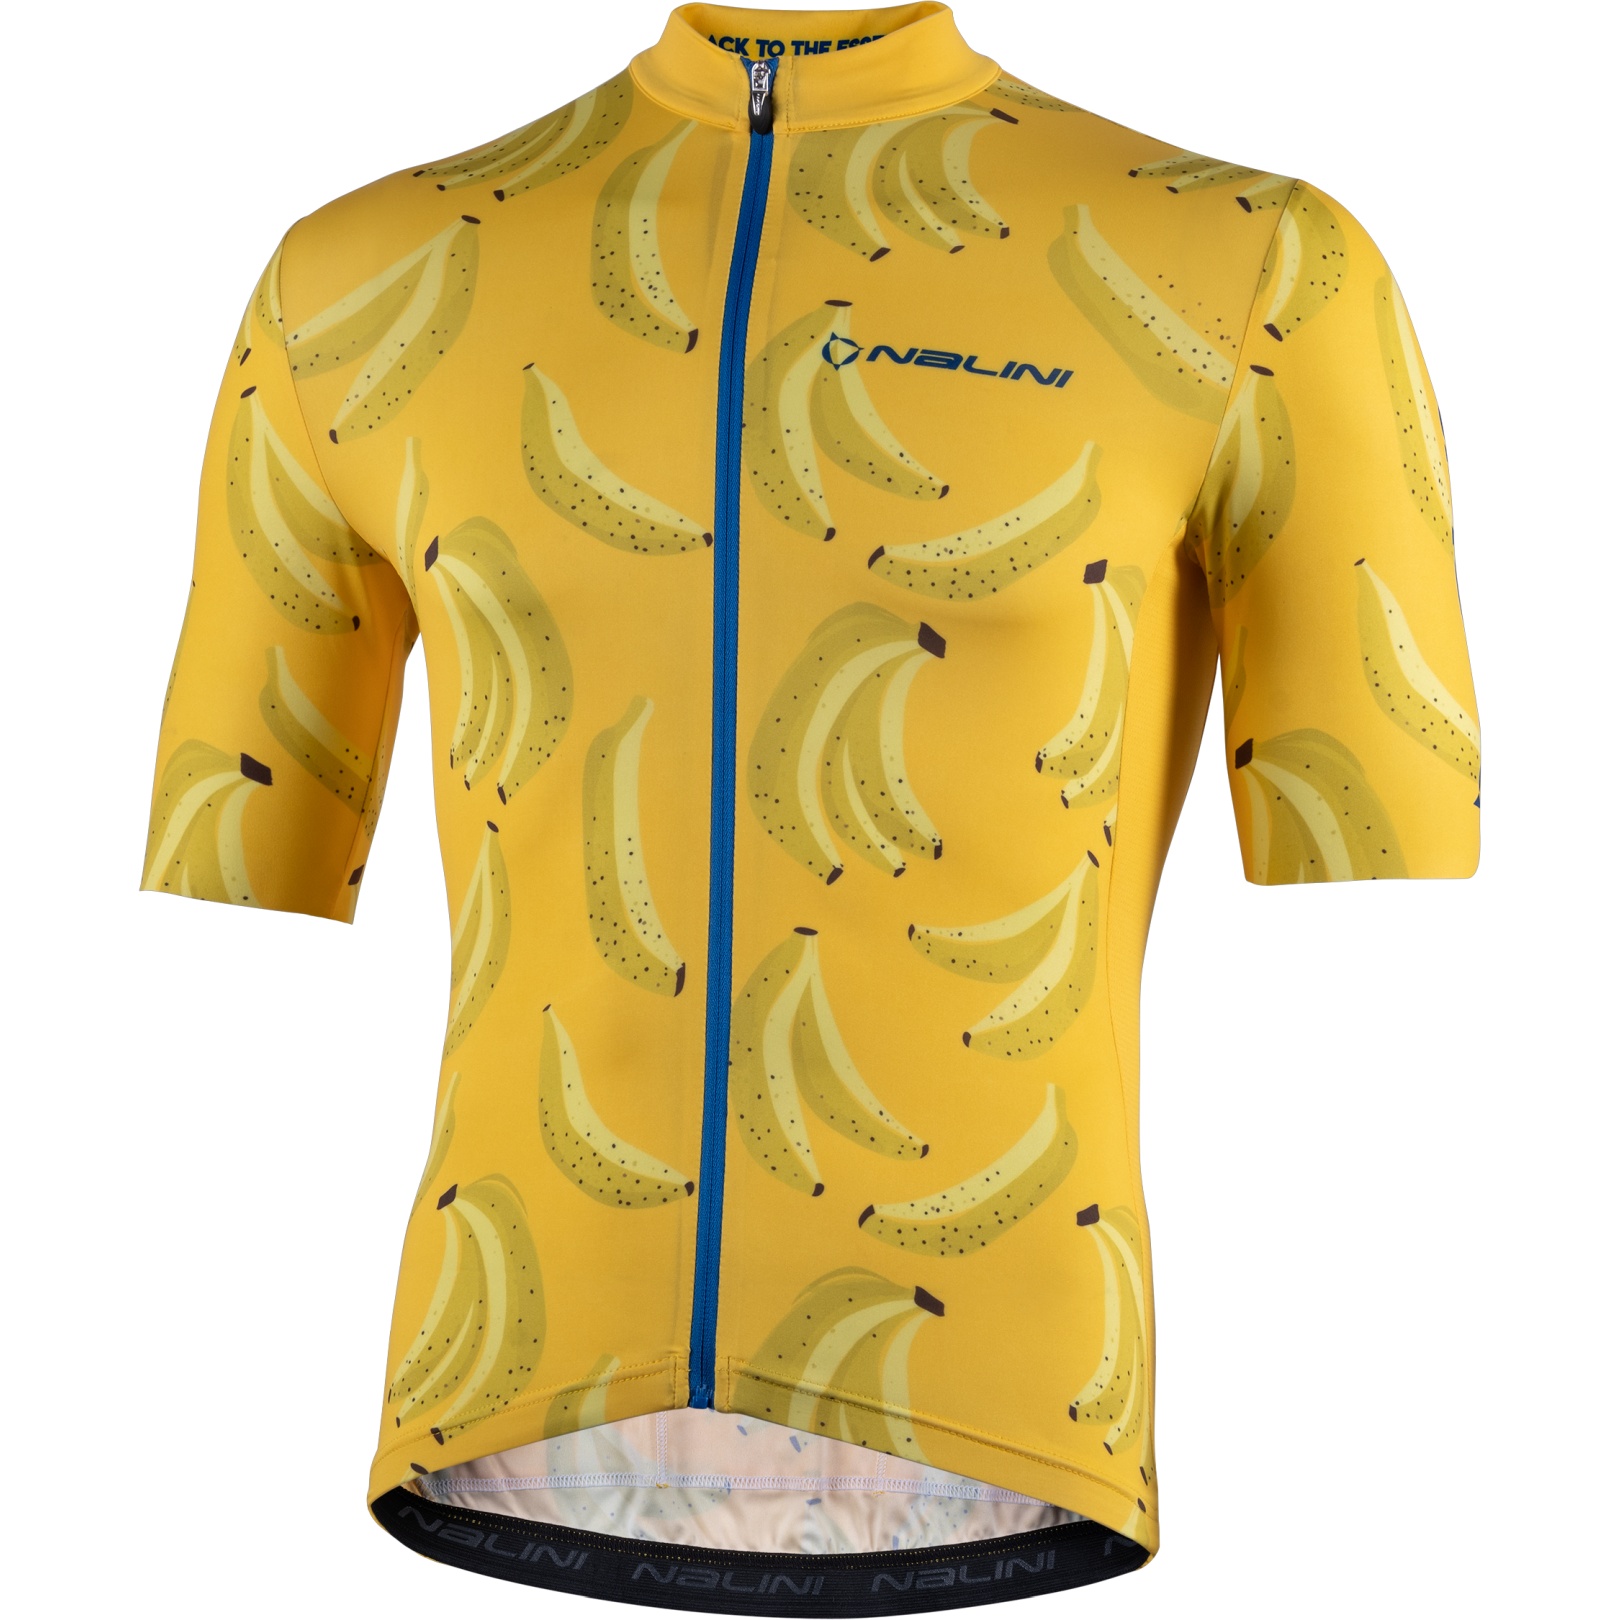 Productfoto van Nalini Las Vegas Fietsshirt met Korte Mouwen - geel/banana 4055